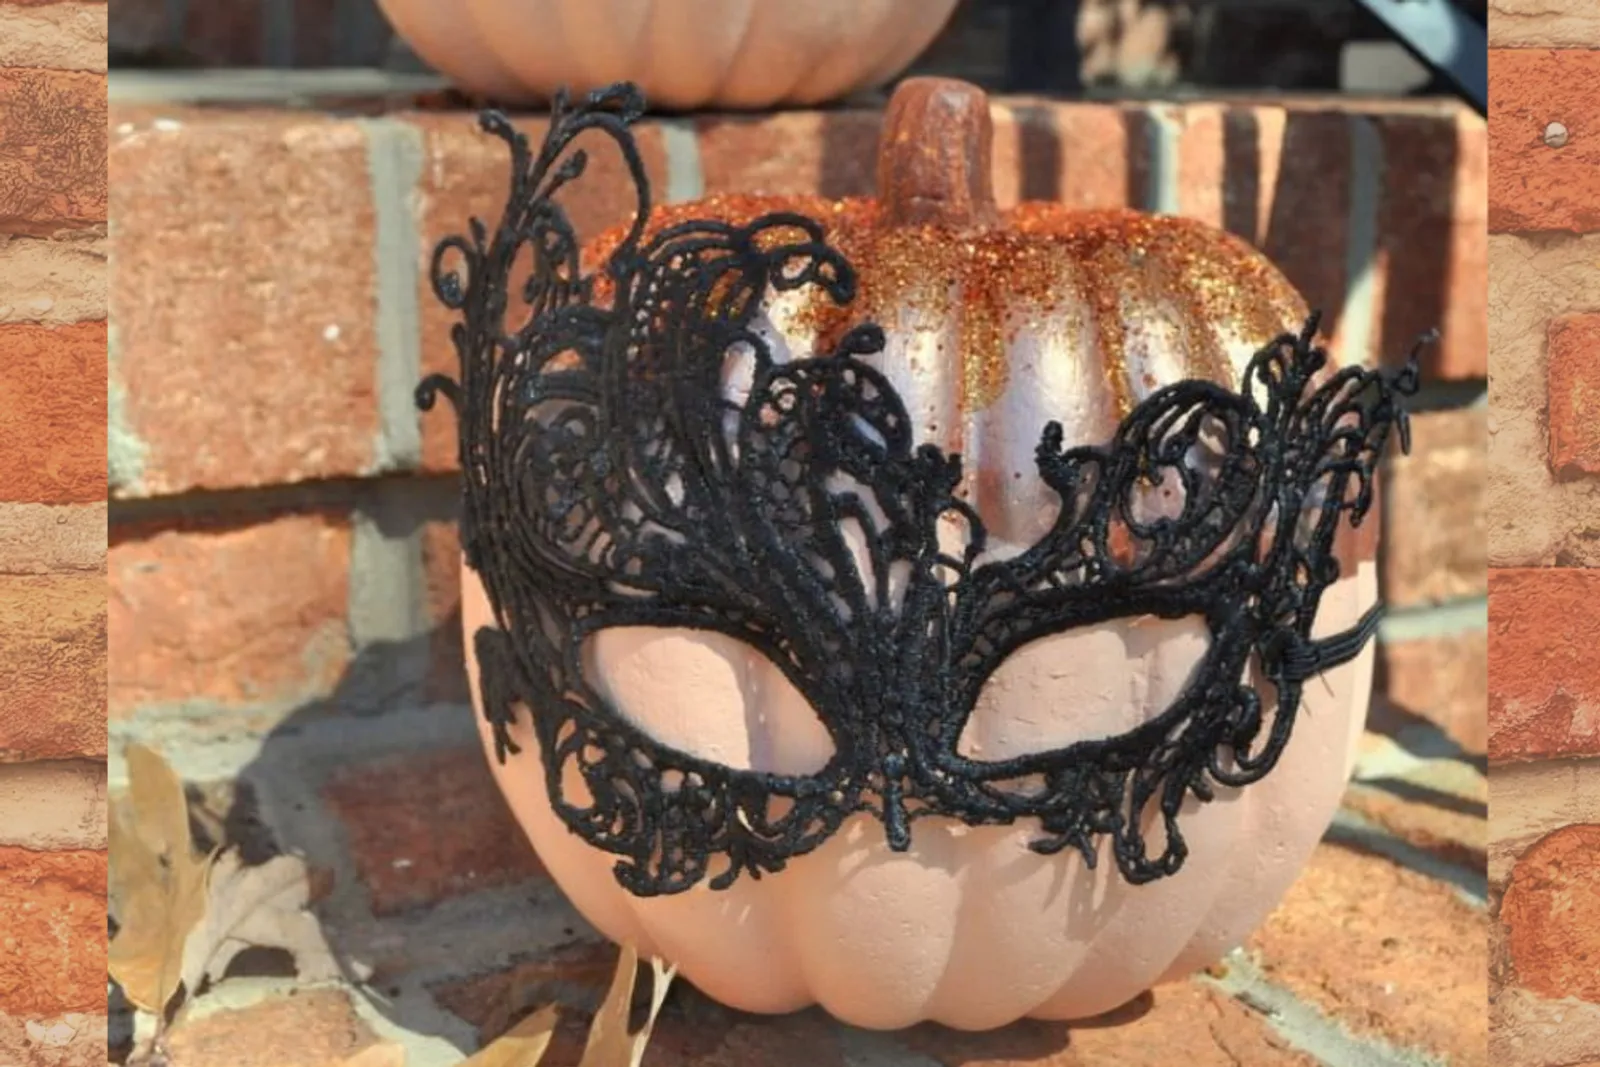 15 Ide Melukis Labu untuk Dekorasi Halloween yang Menggemaskan